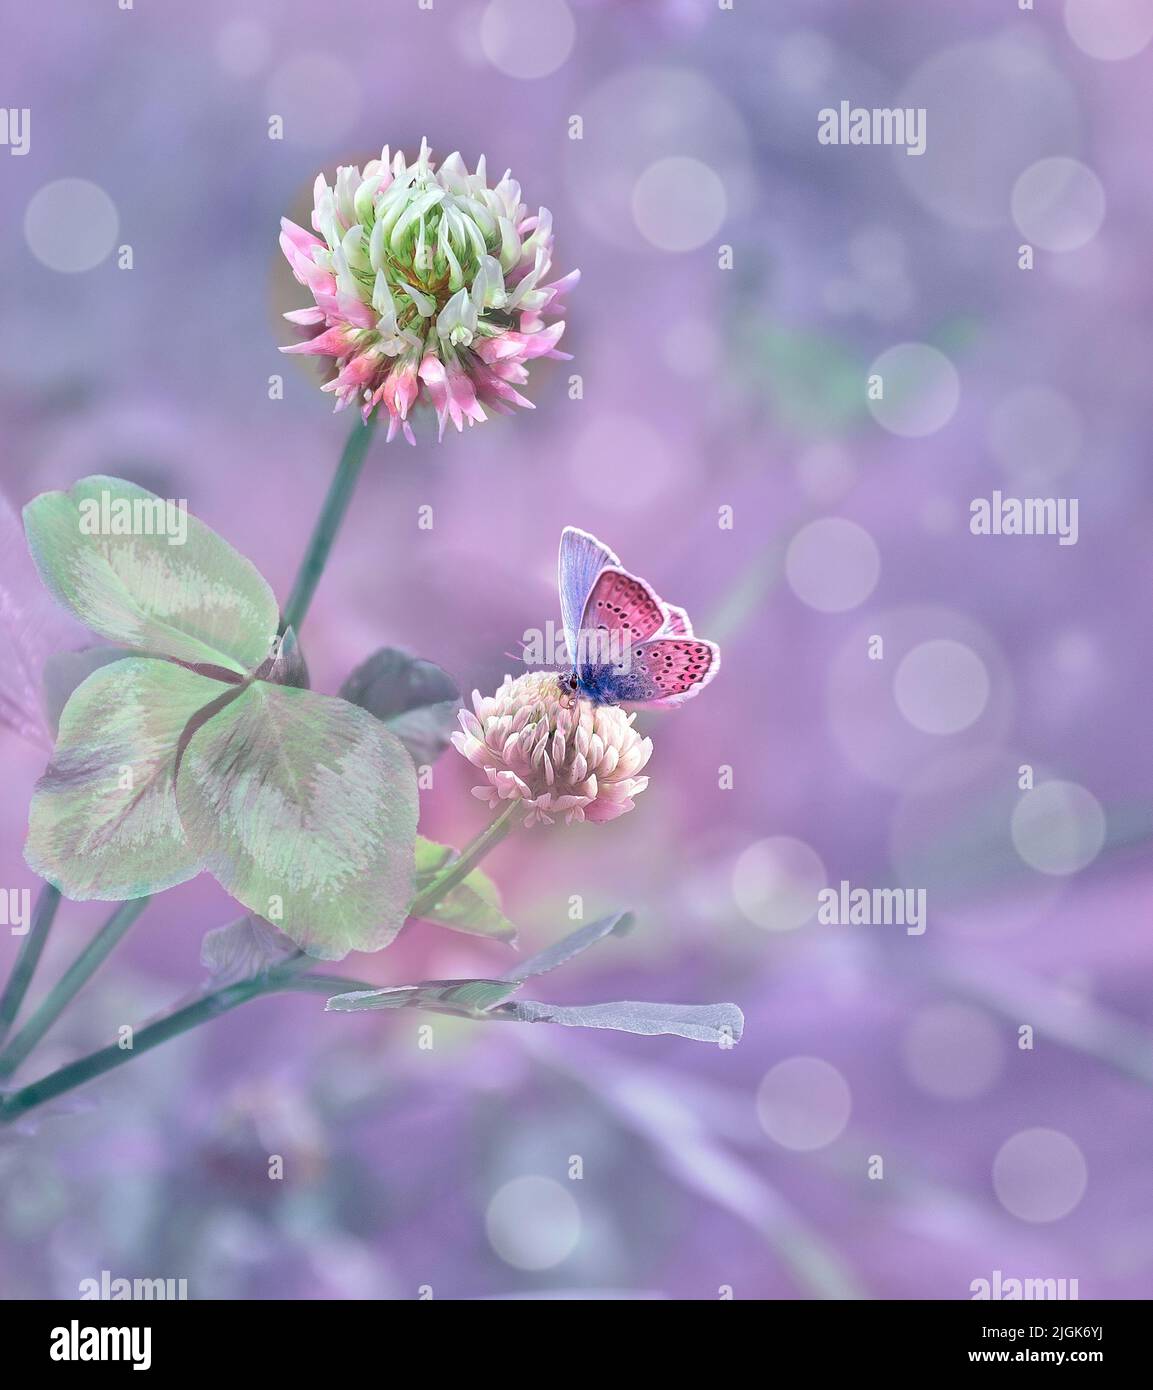 Fondo artístico floral de verano Flores y hojas de trébol rosa (Trifolium) y hermosa mariposa sobre pétalos. Idílico borroso y tonificado estacional Foto de stock